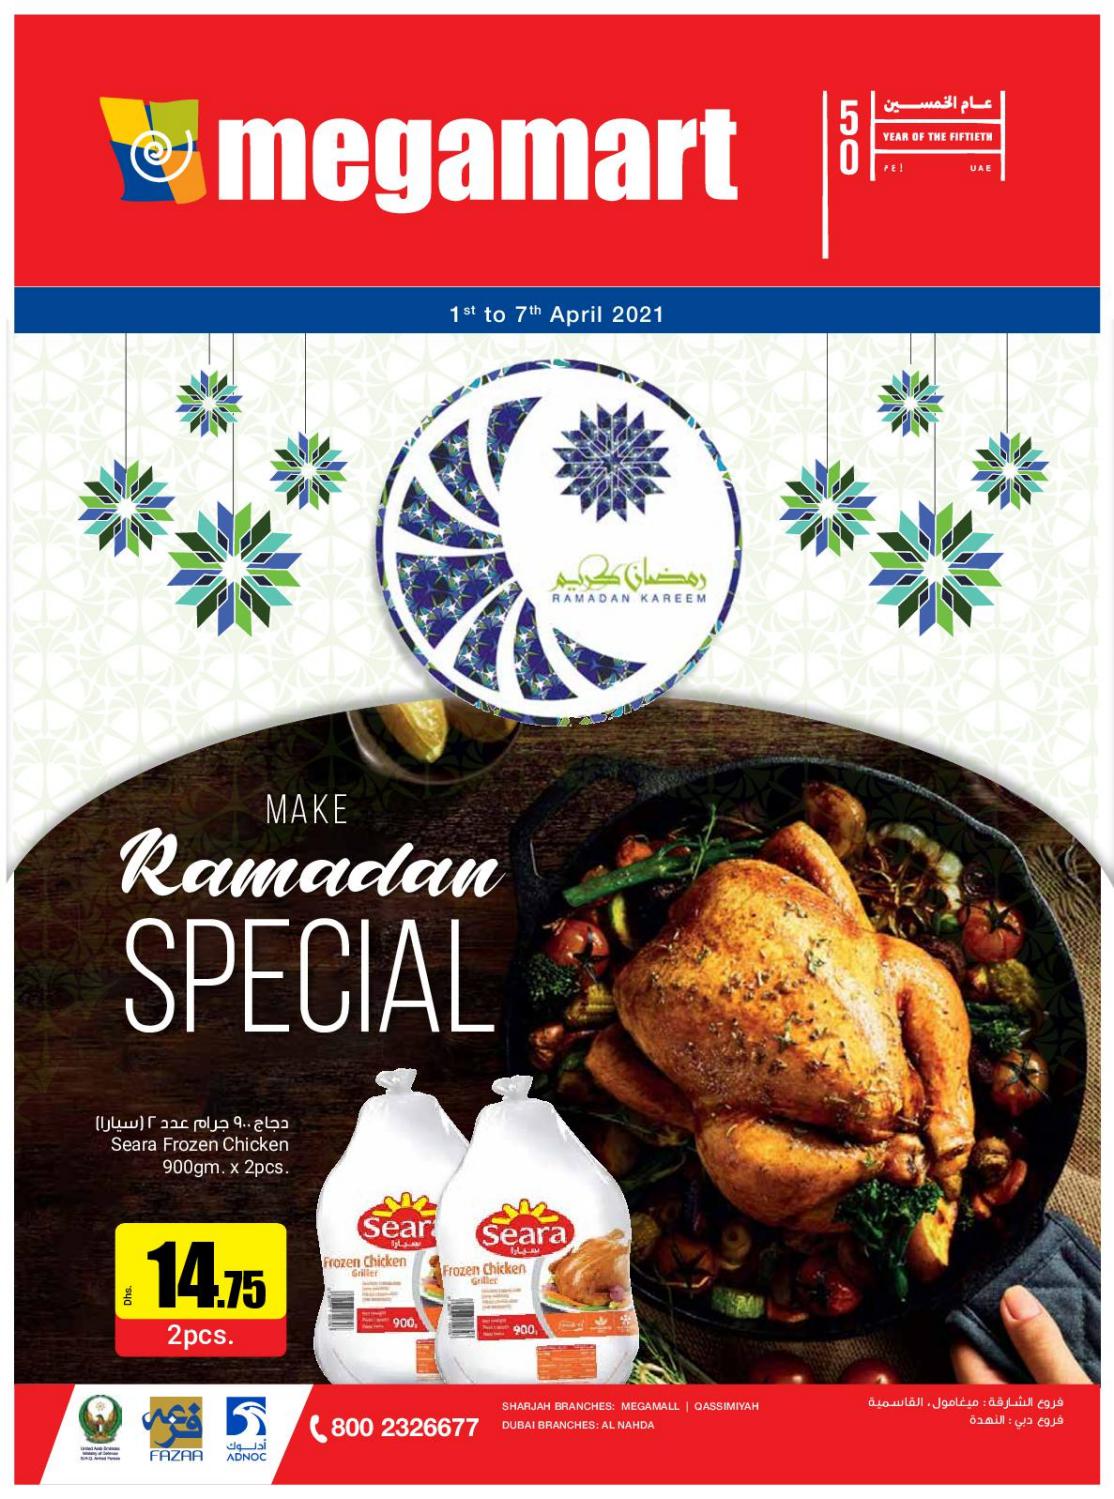 Megamart Ramadan Specials 2021 – Catalog